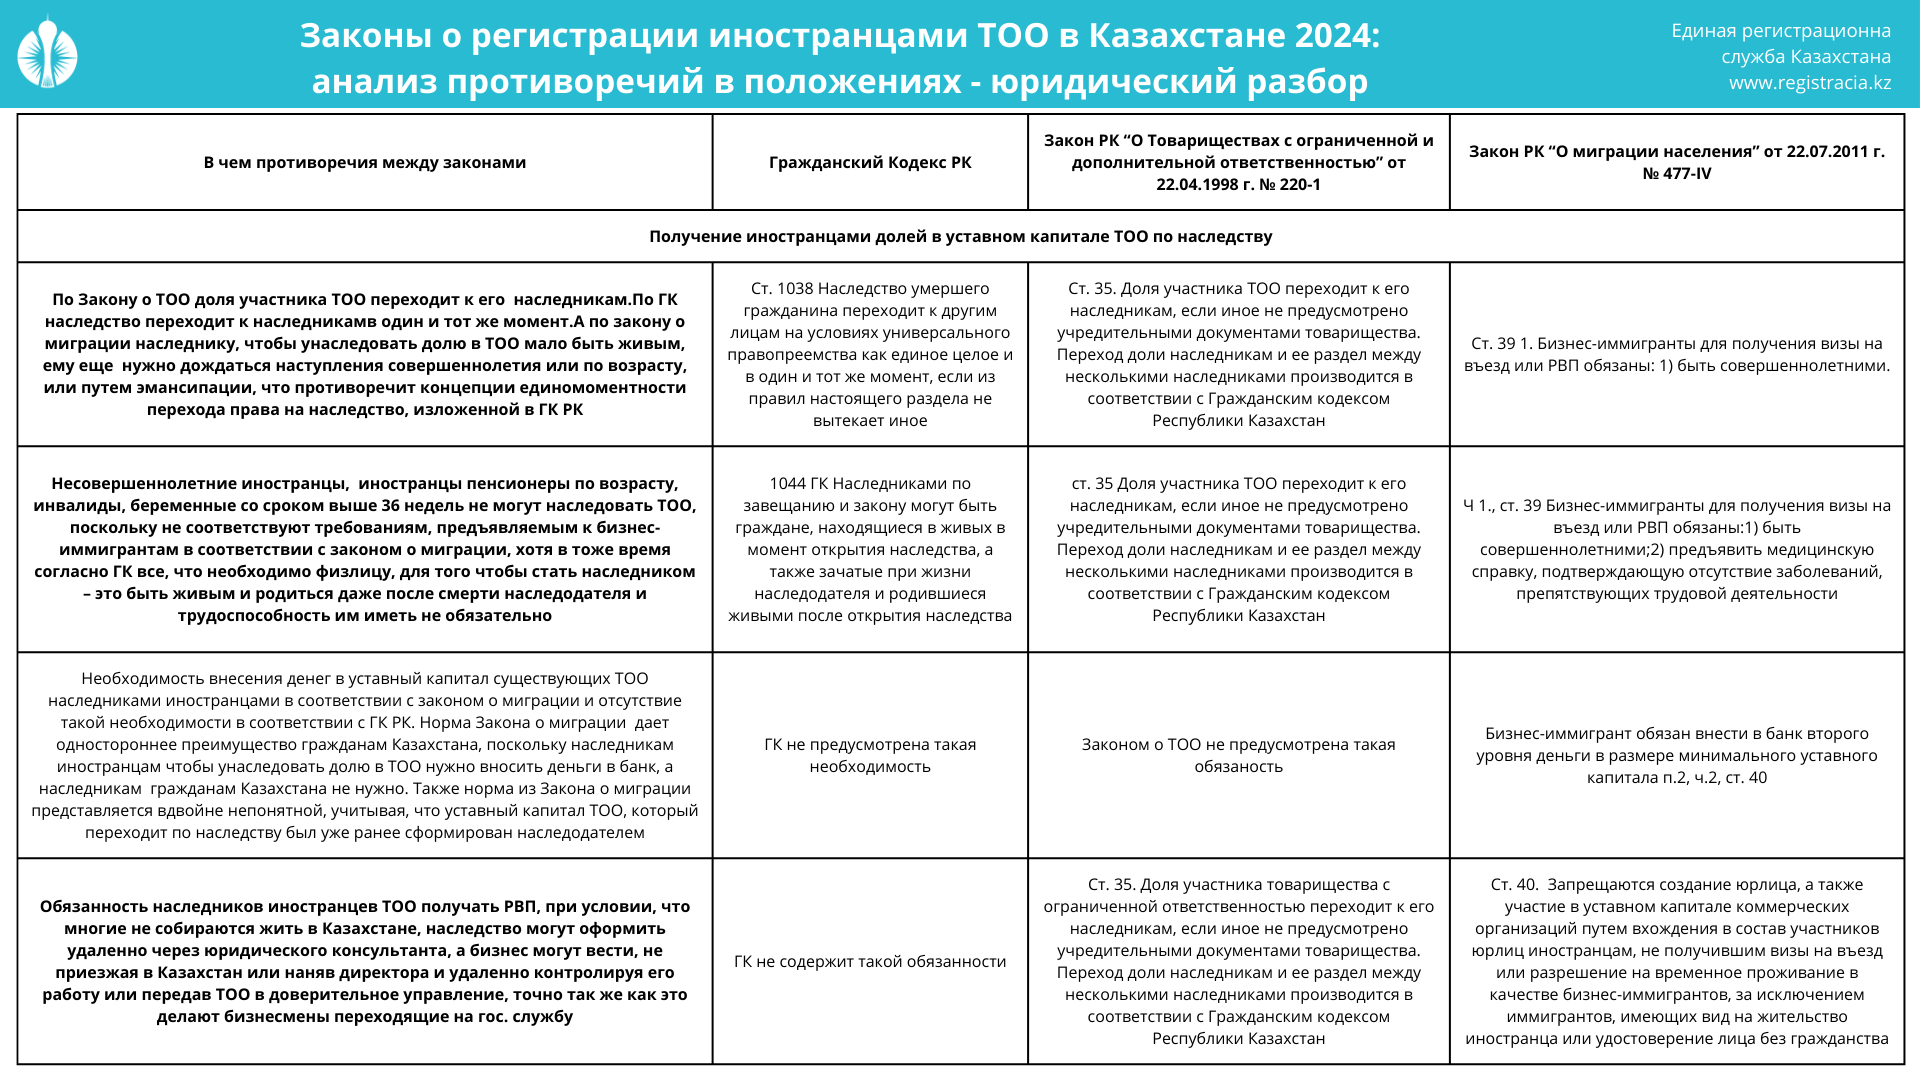 Законы о регистрации иностранцами ТОО в РК 2024